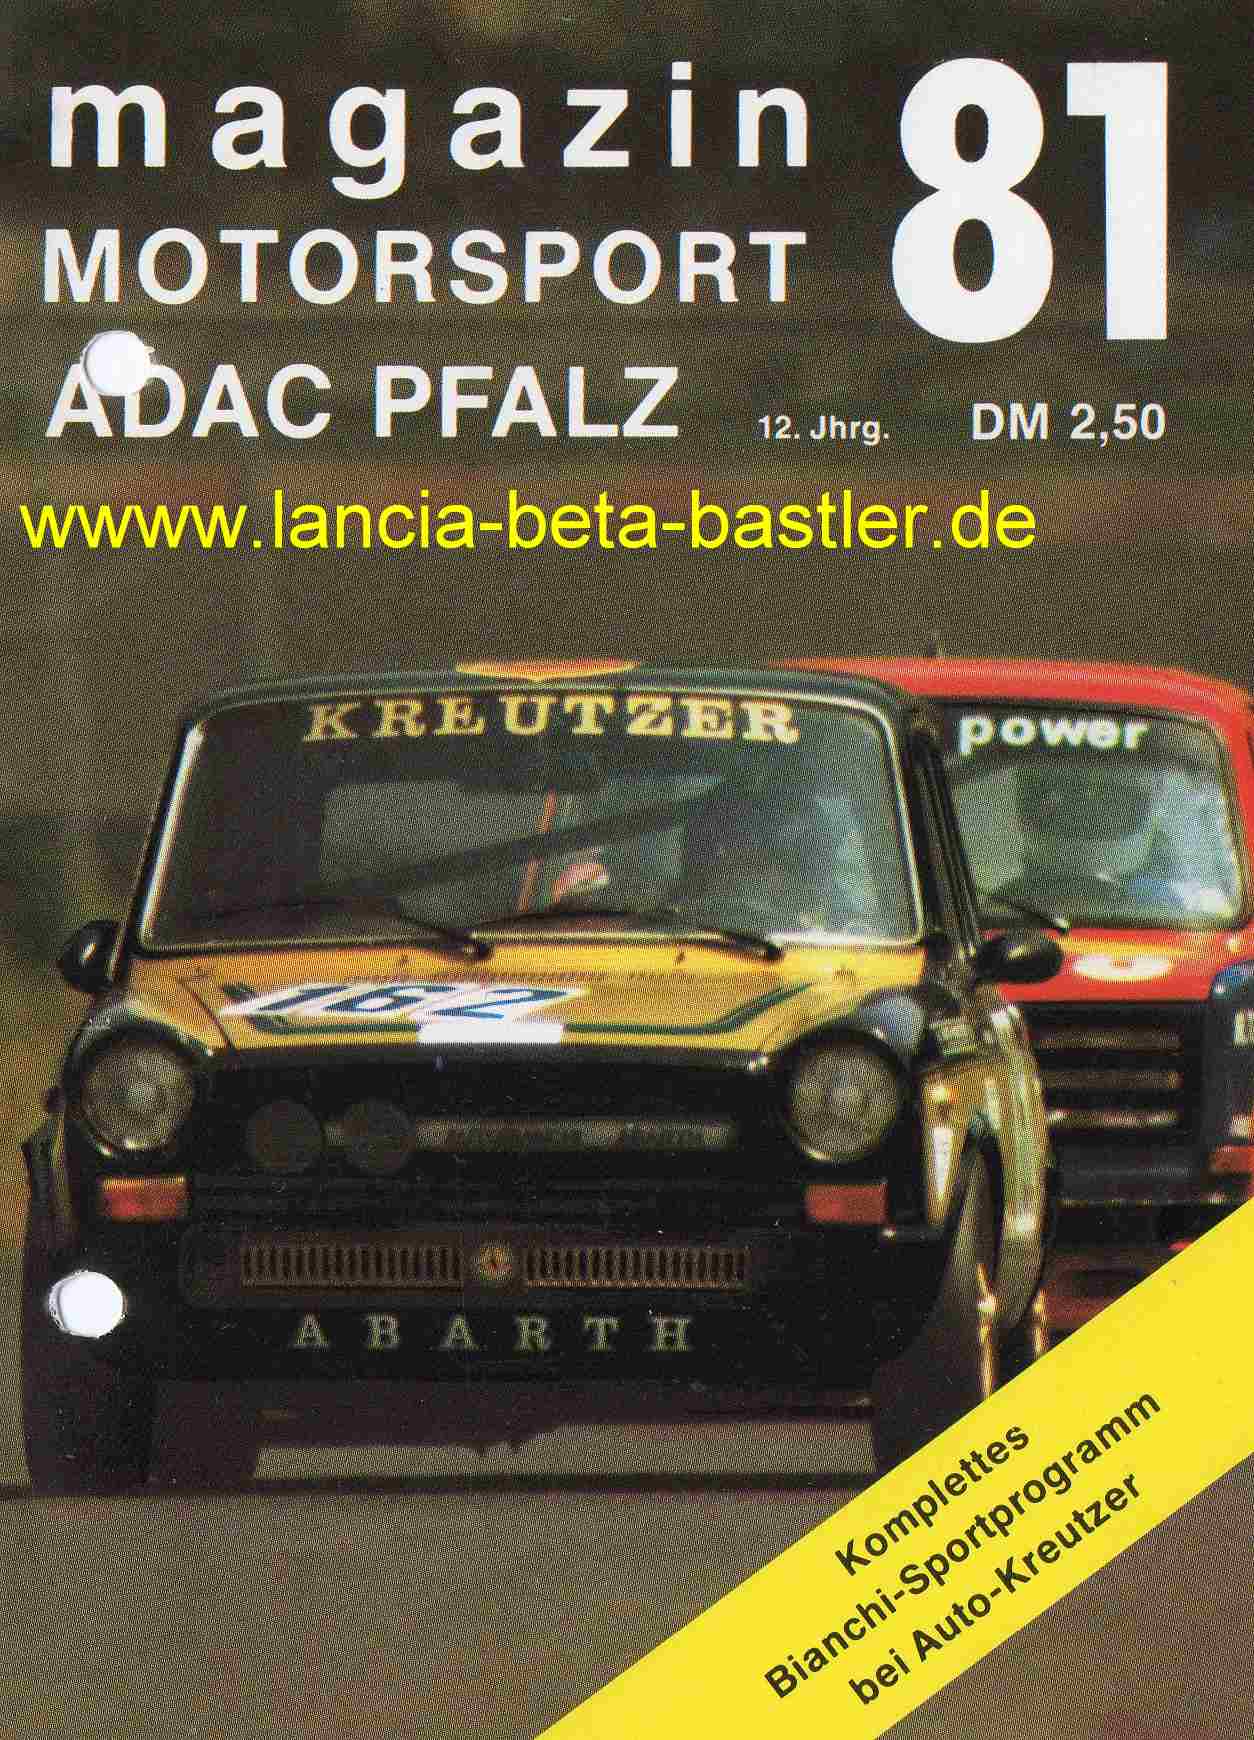 Bianchi 1981 klein